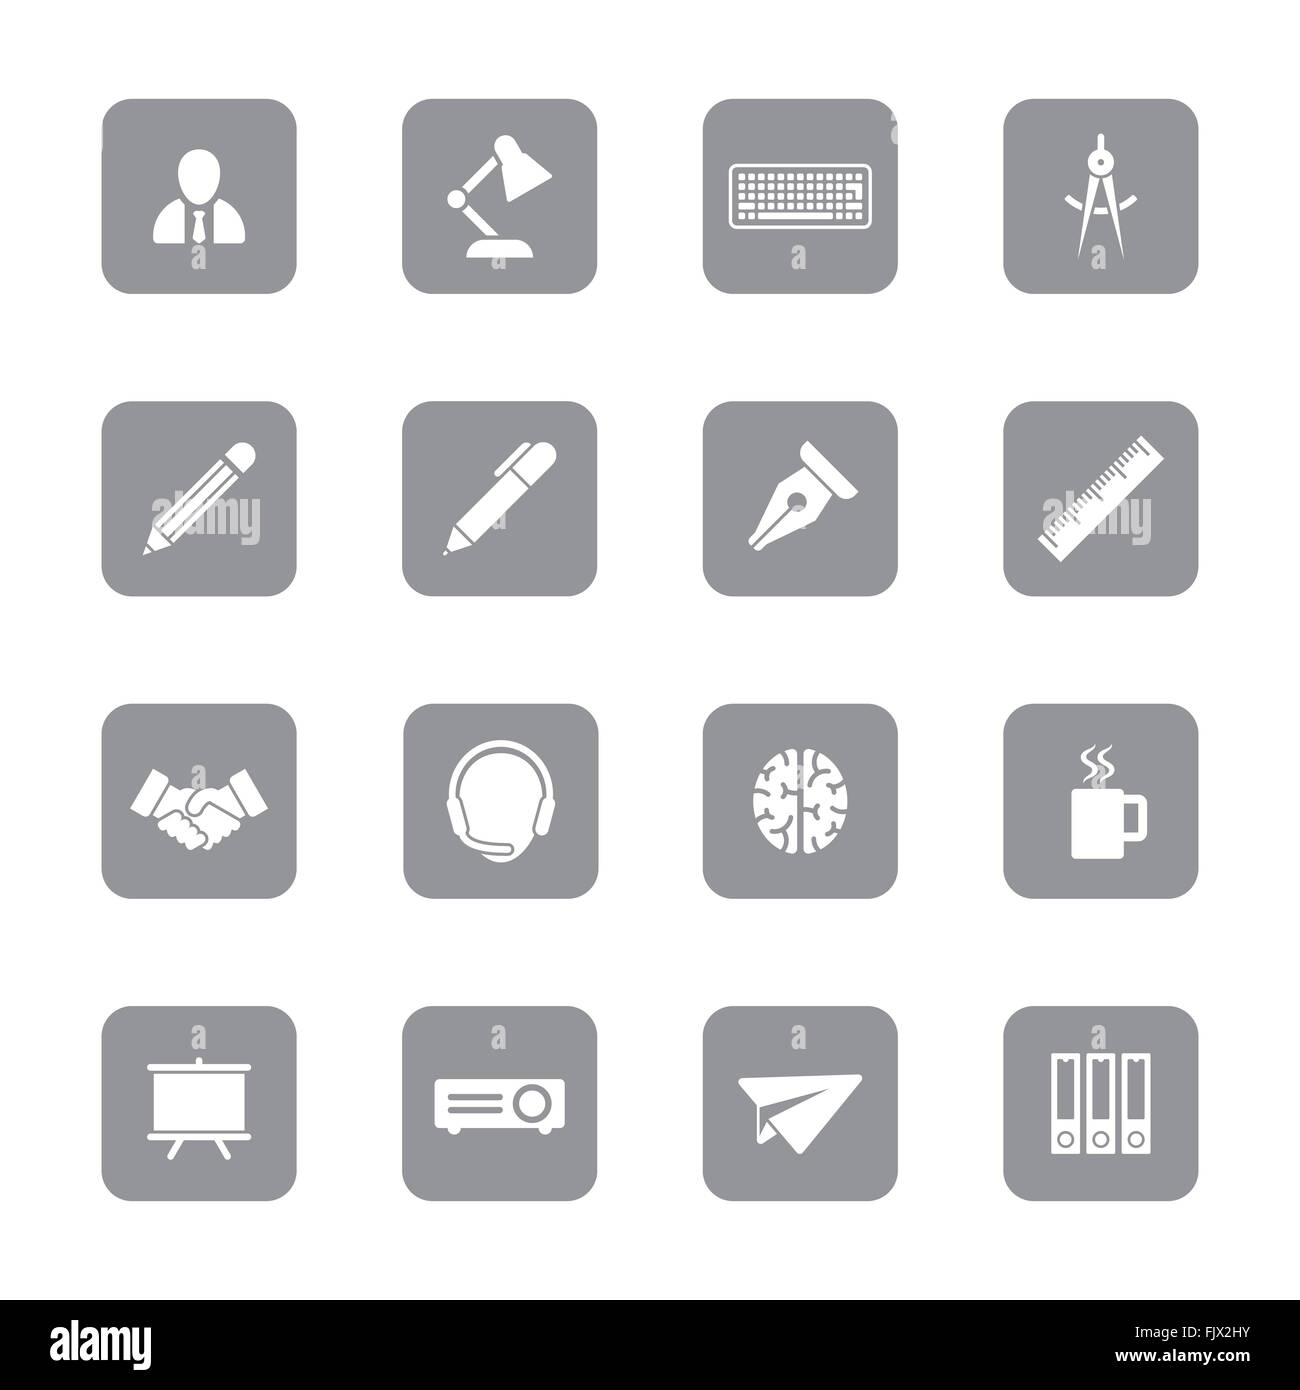 [JPEG] icon set 8 plats gris sur rectangle arrondi pour le web design, l'interface utilisateur (IU), l'infographie et de l'application mobile (apps) Banque D'Images